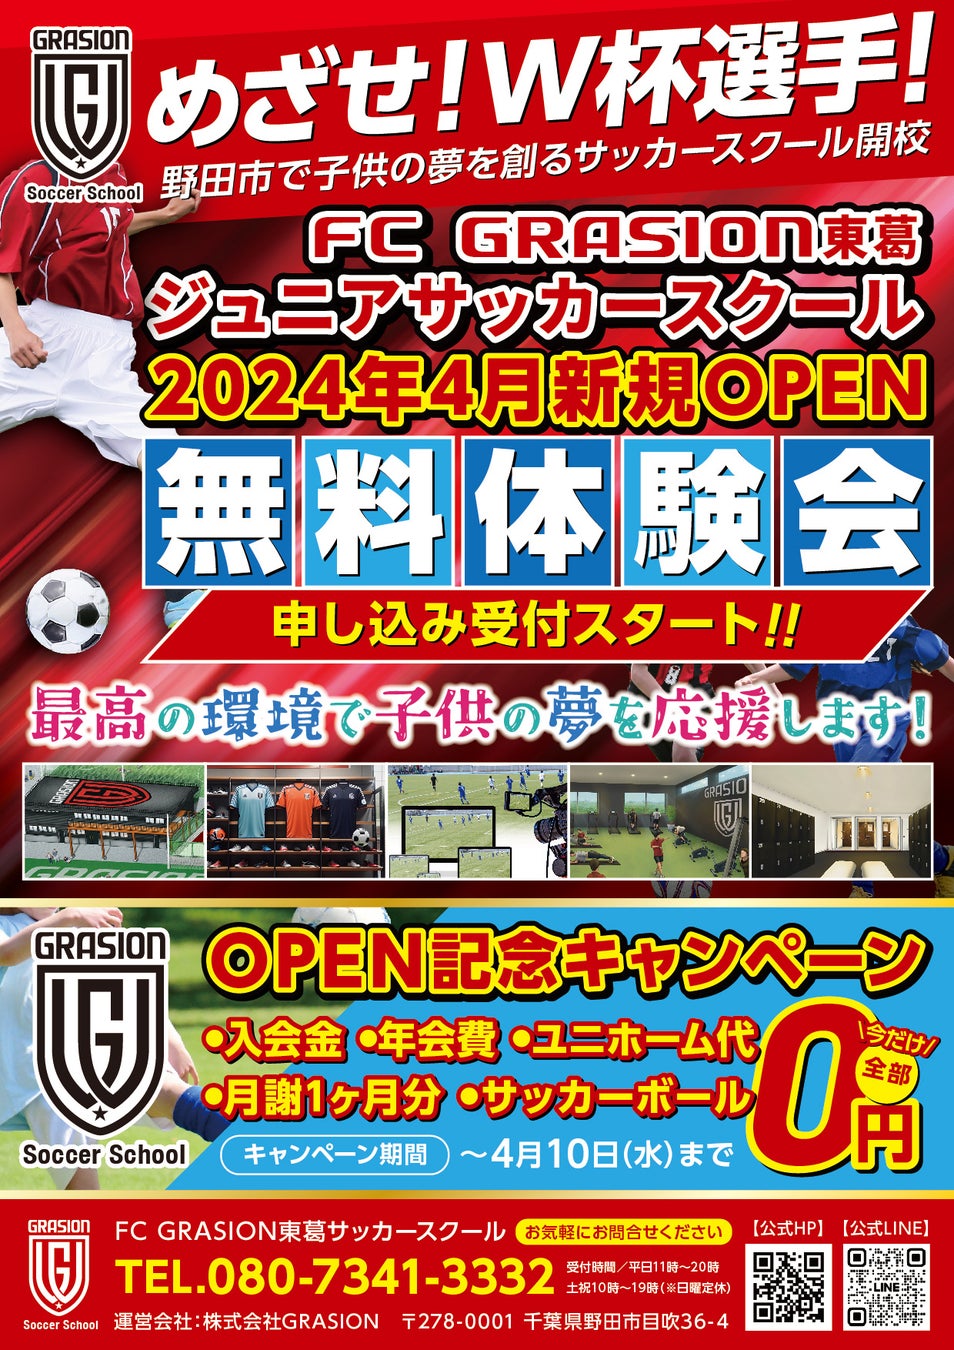 【FC GRASION 東葛】サッカースクール開校のお知らせ